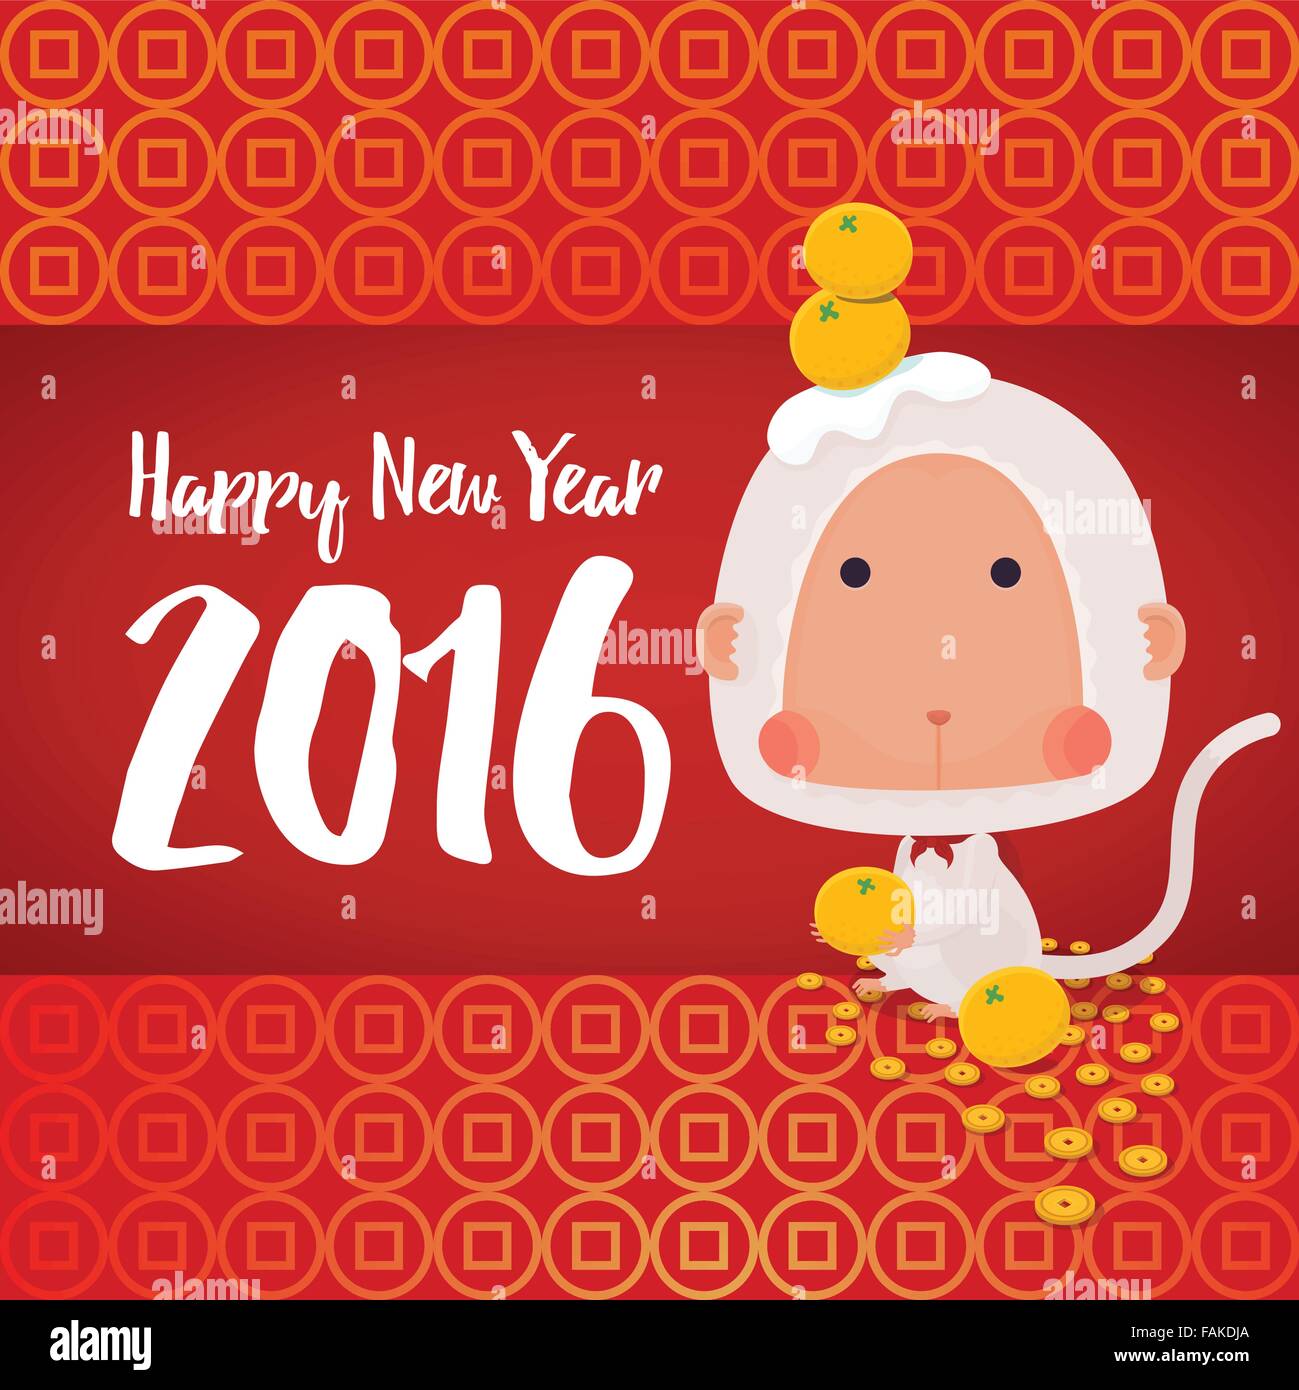 Vektor Illustrator der weiße Affe im chinesischen Tierkreis mit Orangen und Münzen für 2016 Silvester feiern Grußkarte Stock Vektor